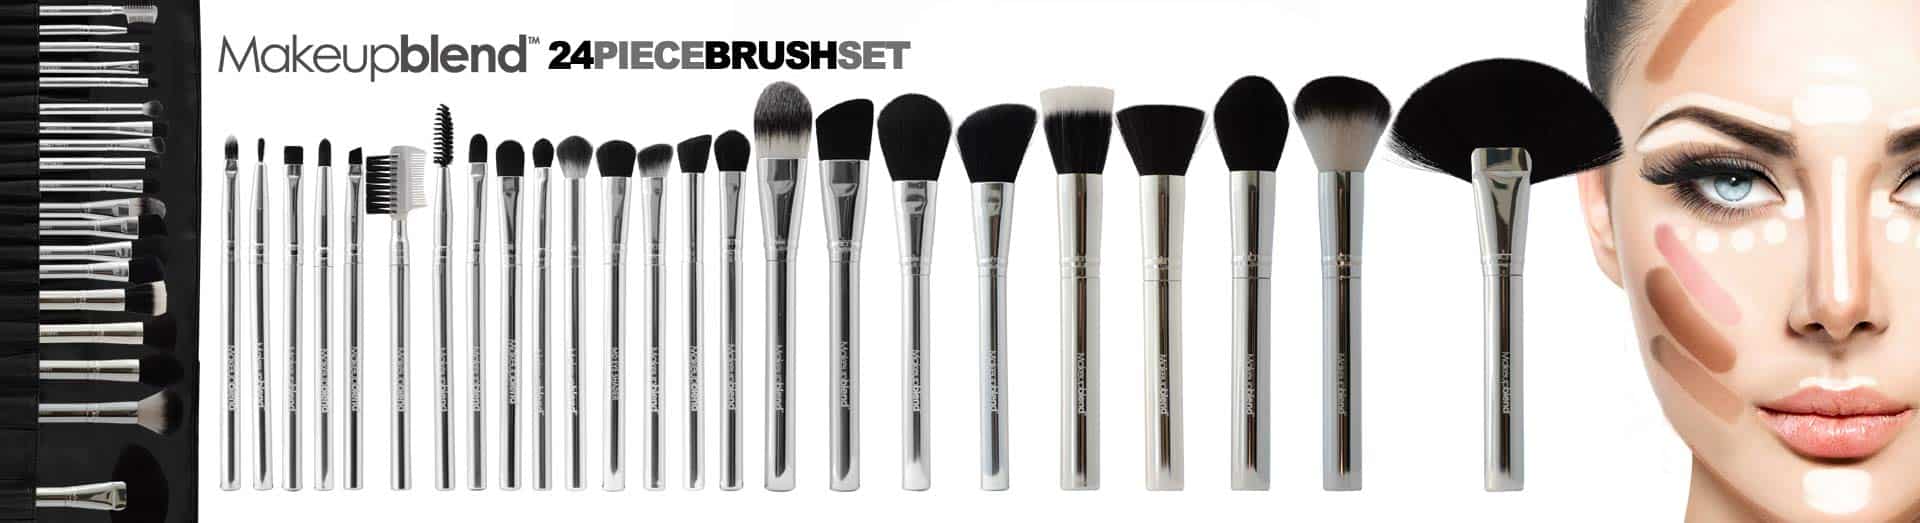 brushes1500